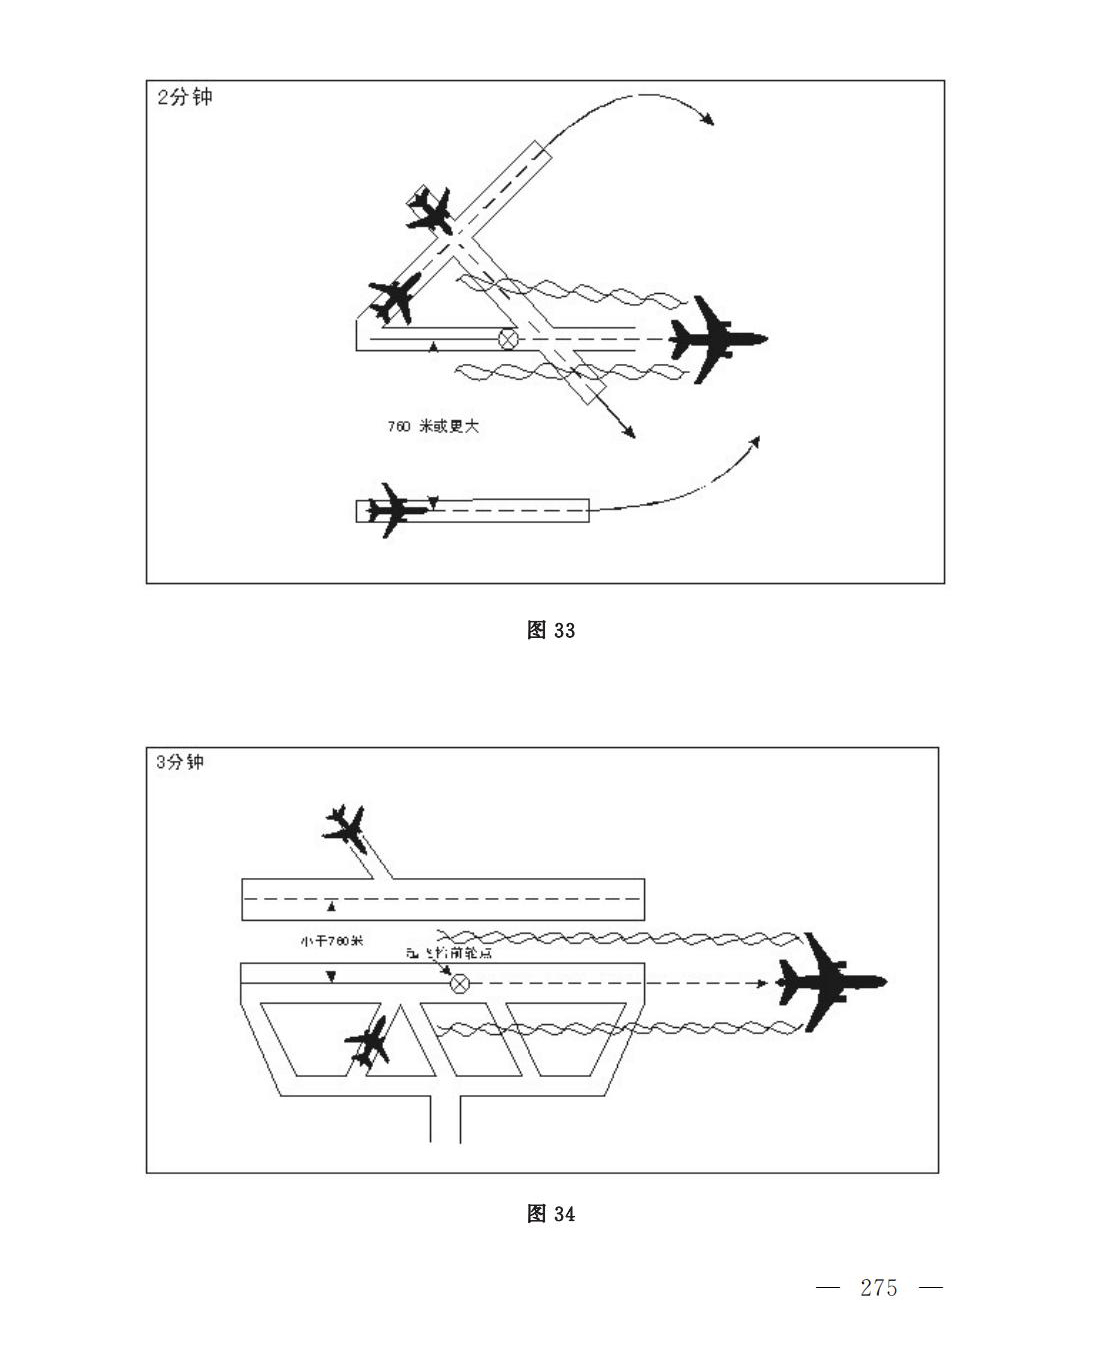 【民航规章】民用航空空中交通管理规则